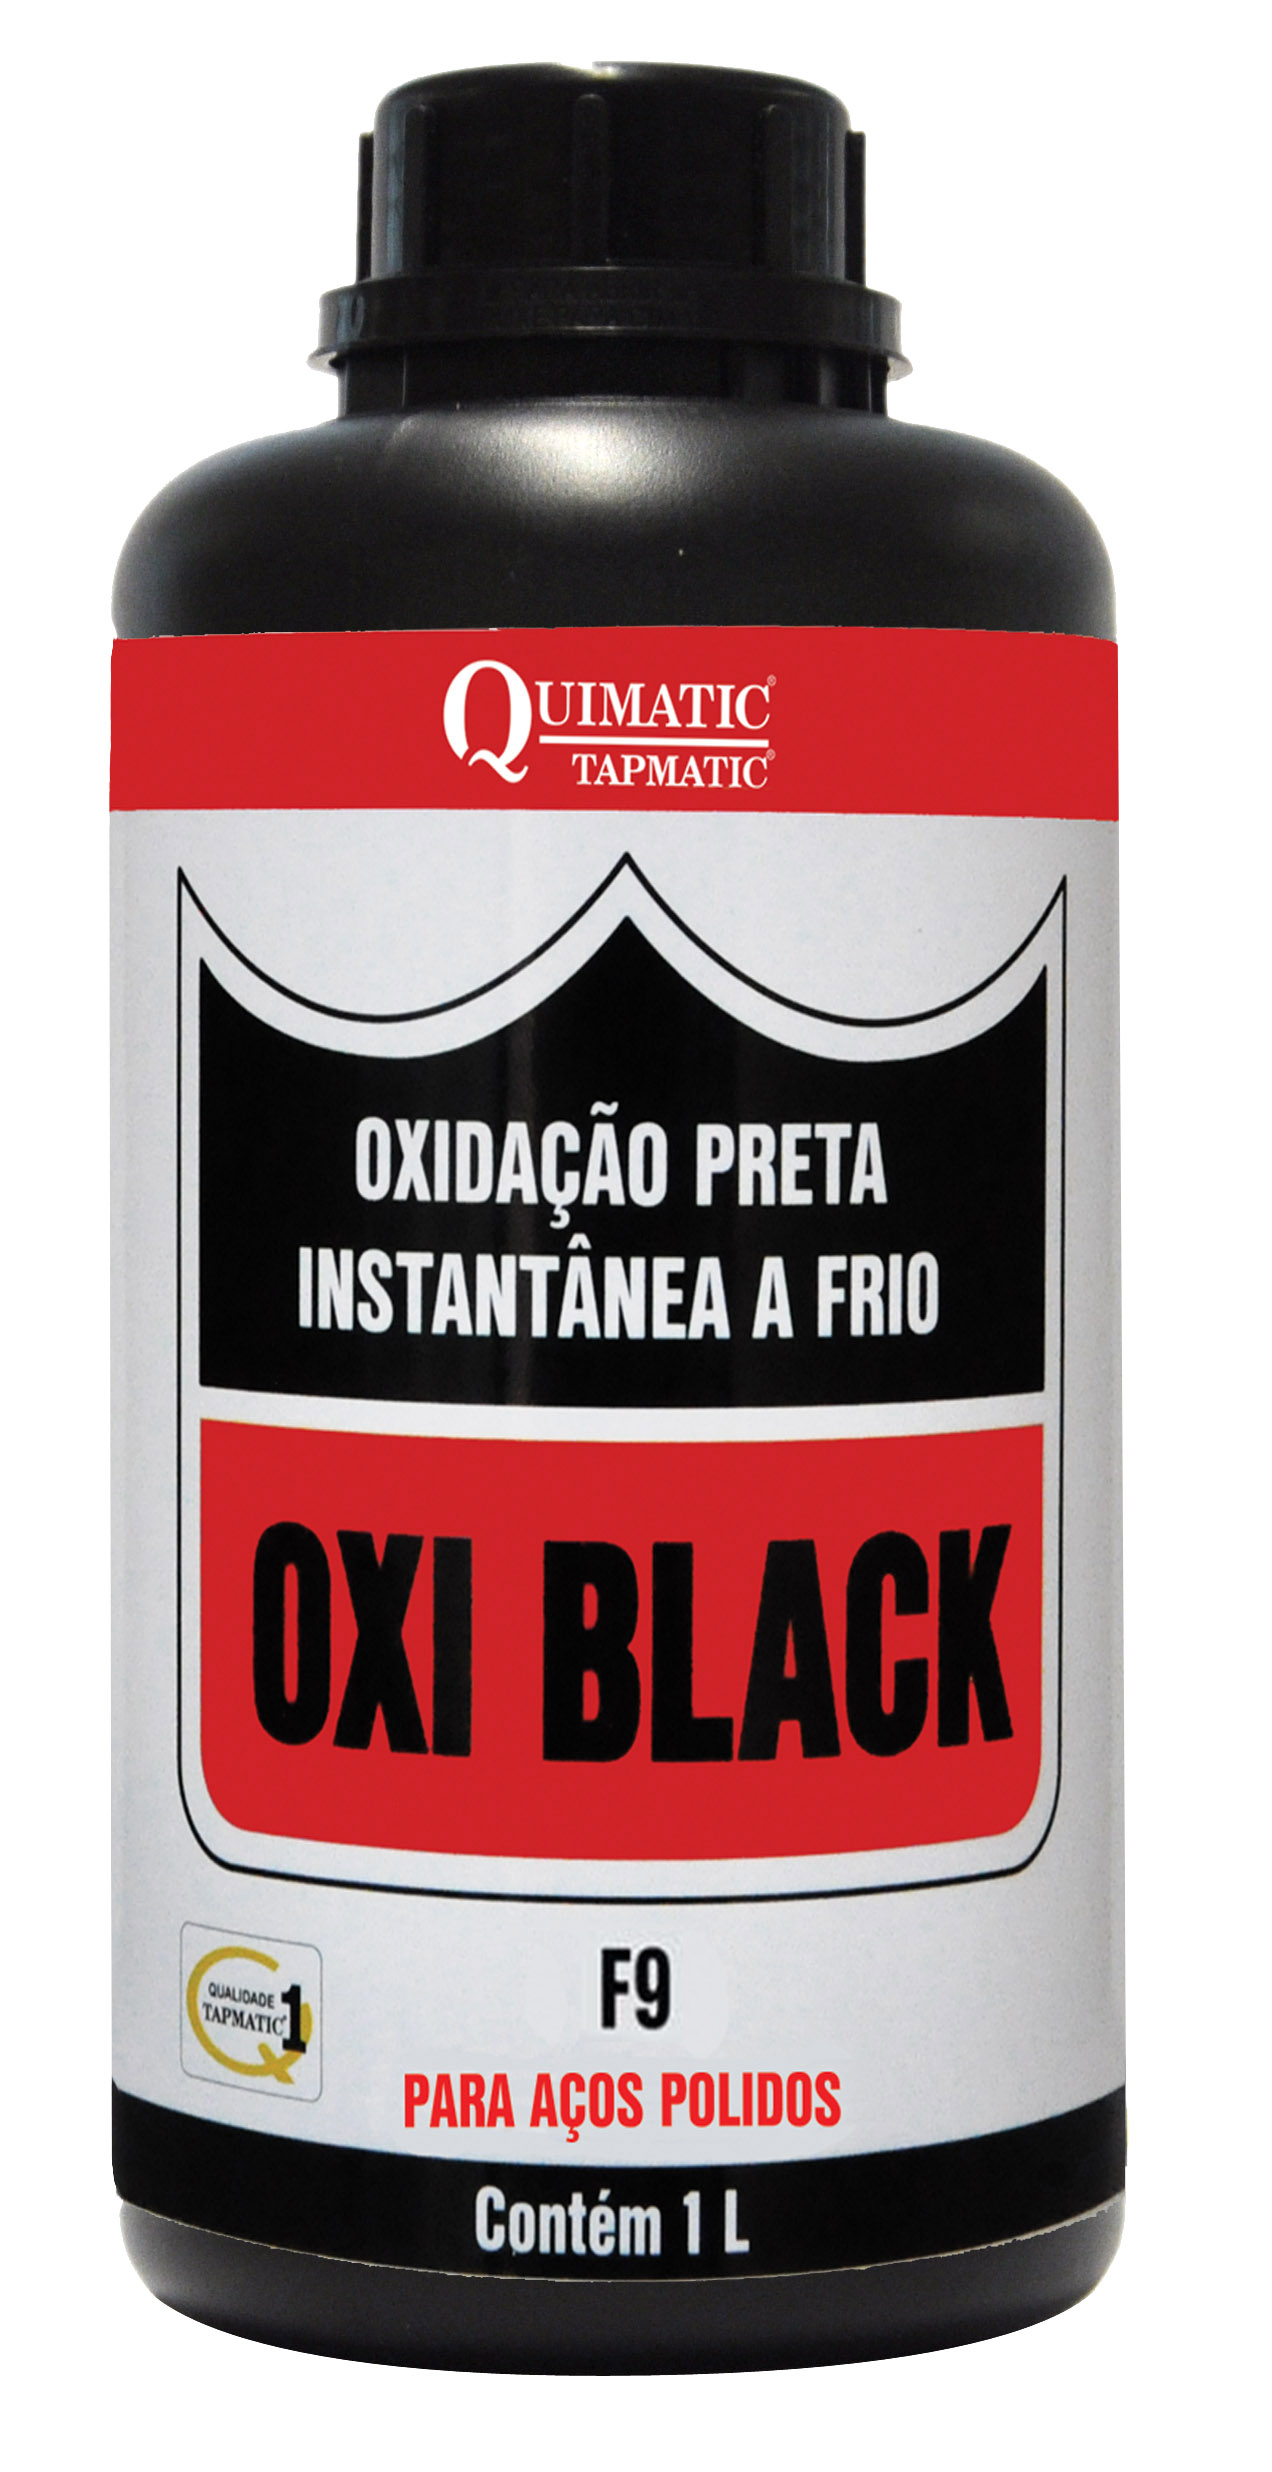 Oxidação Preta Instantânea a Frio OXI BLACK F9 1 Litro